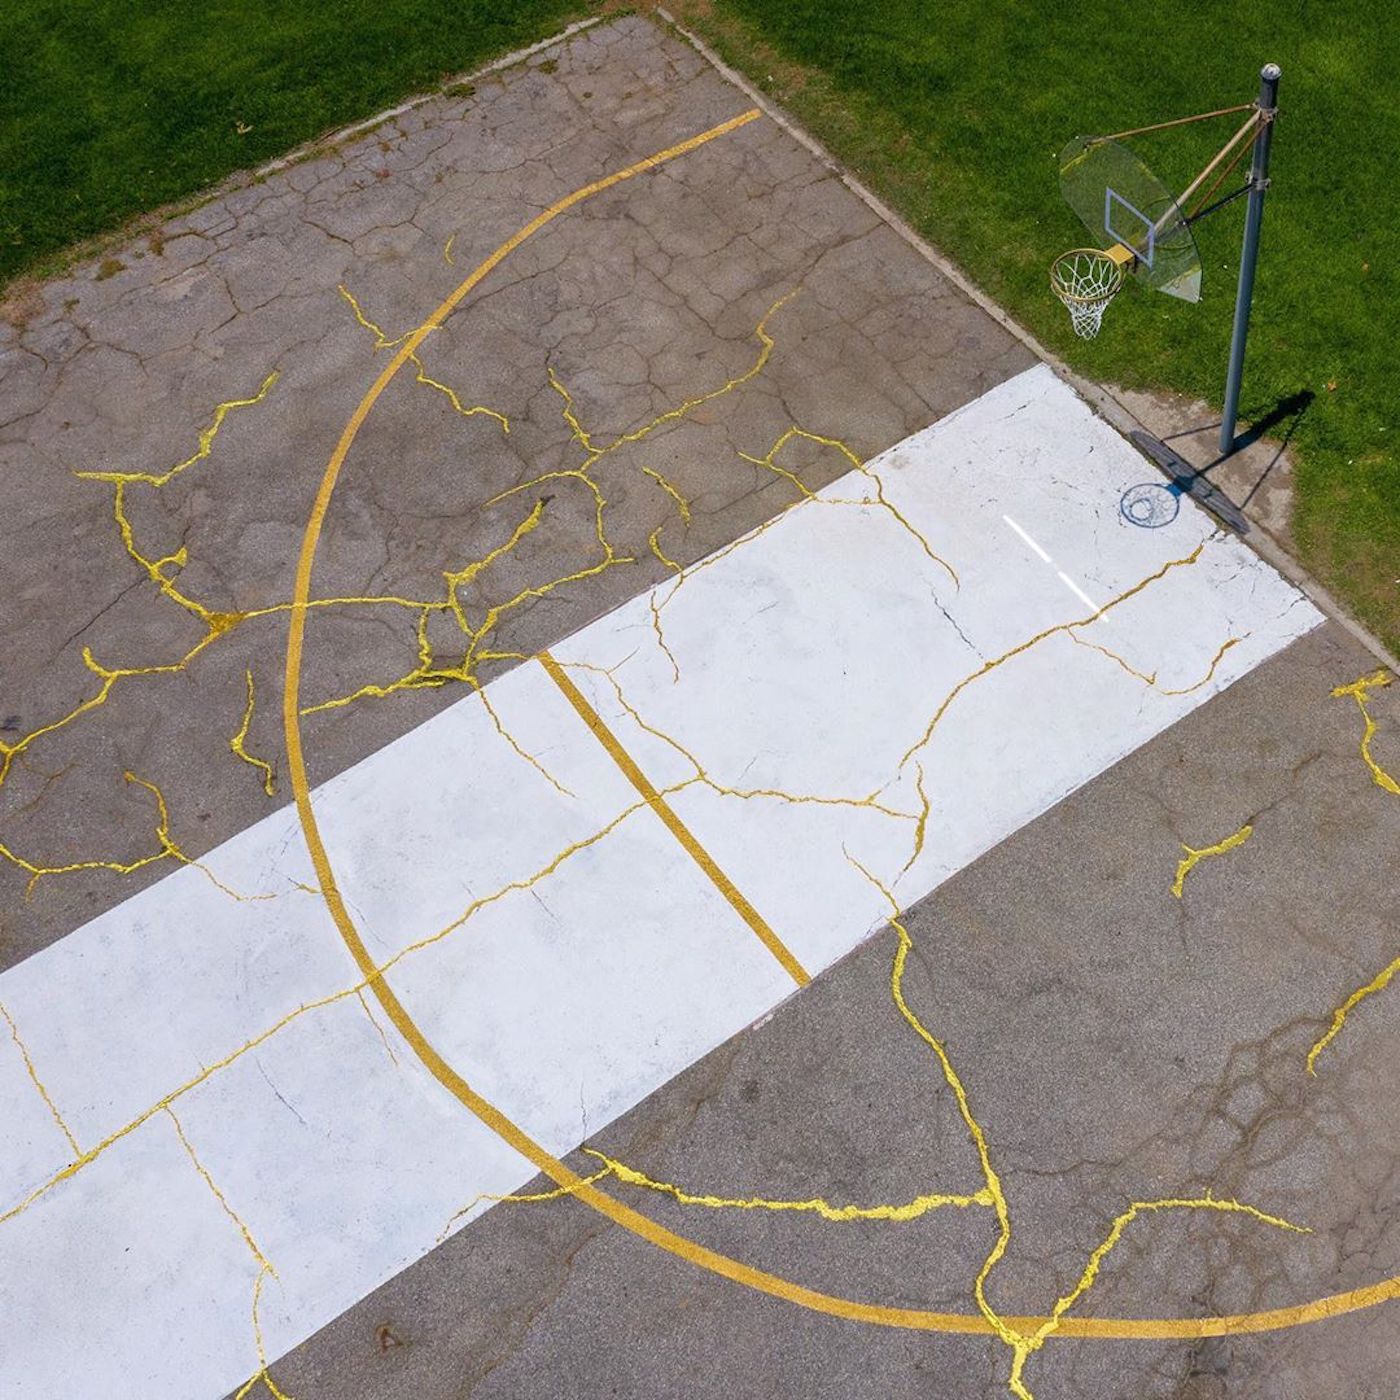 L'artiste Victor Solomon répare un terrain basket avec de la poudre d'or